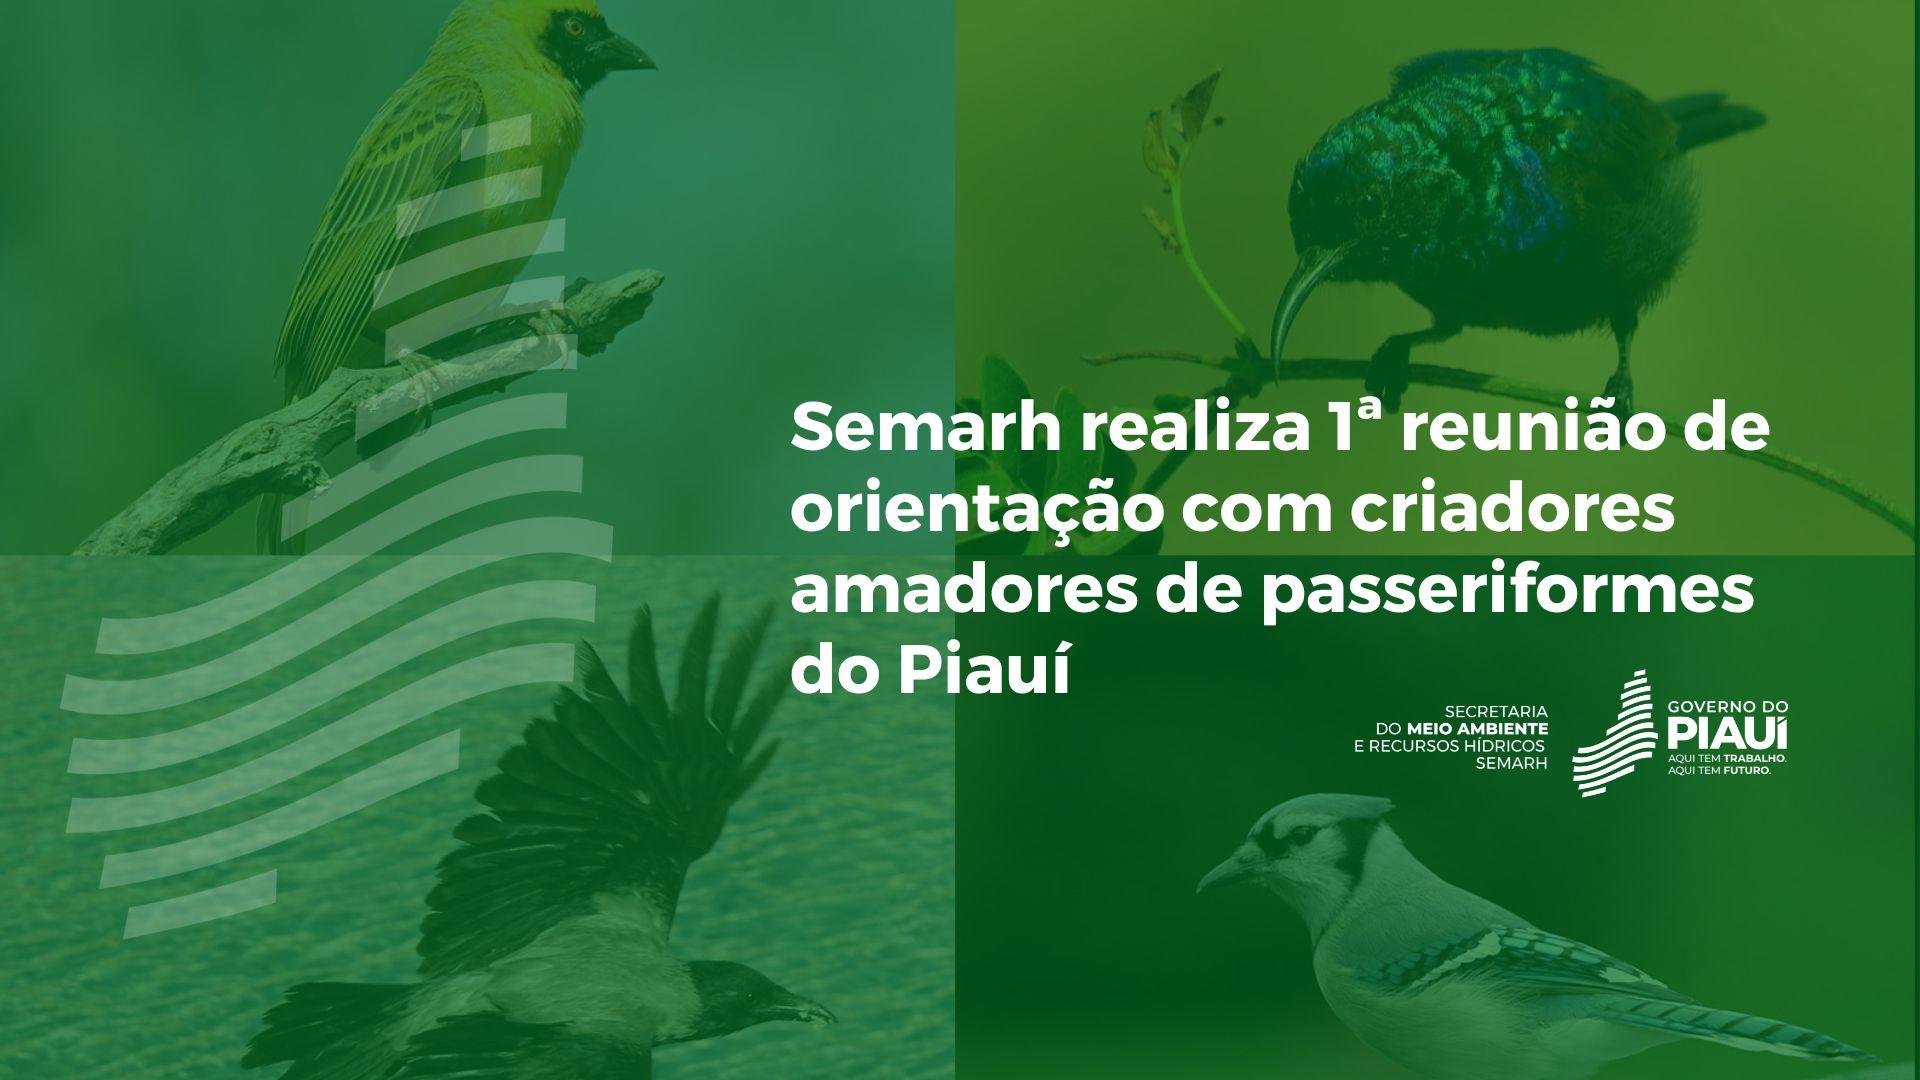 Semarh realiza 1ª reunião de orientação com criadores amadores de passeriformes do Piauí